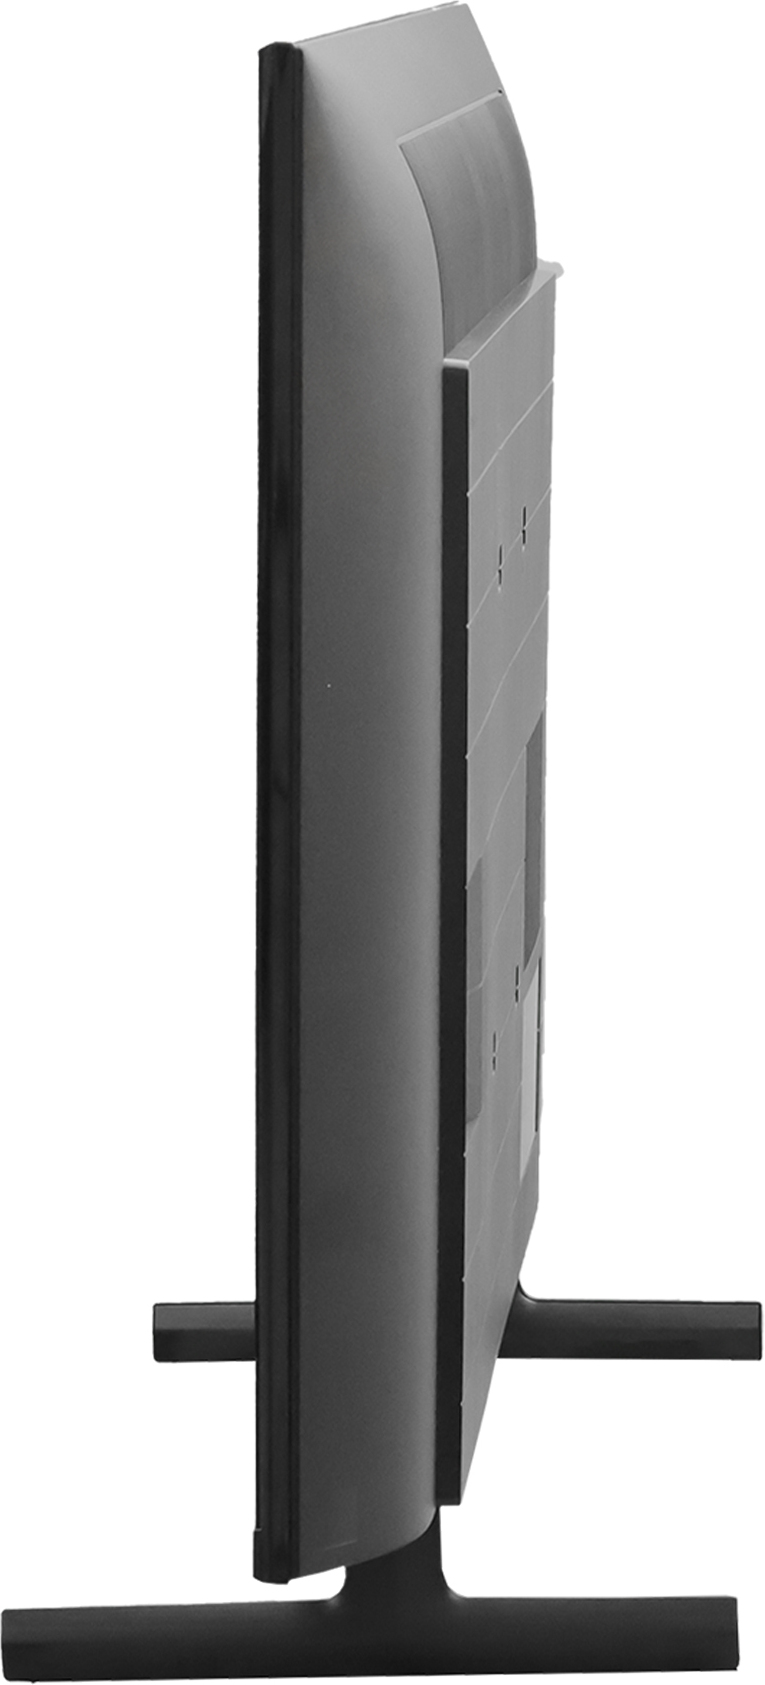 SONY  X80L (43 inch) Ultra HD (4K) (KD-43X80L)